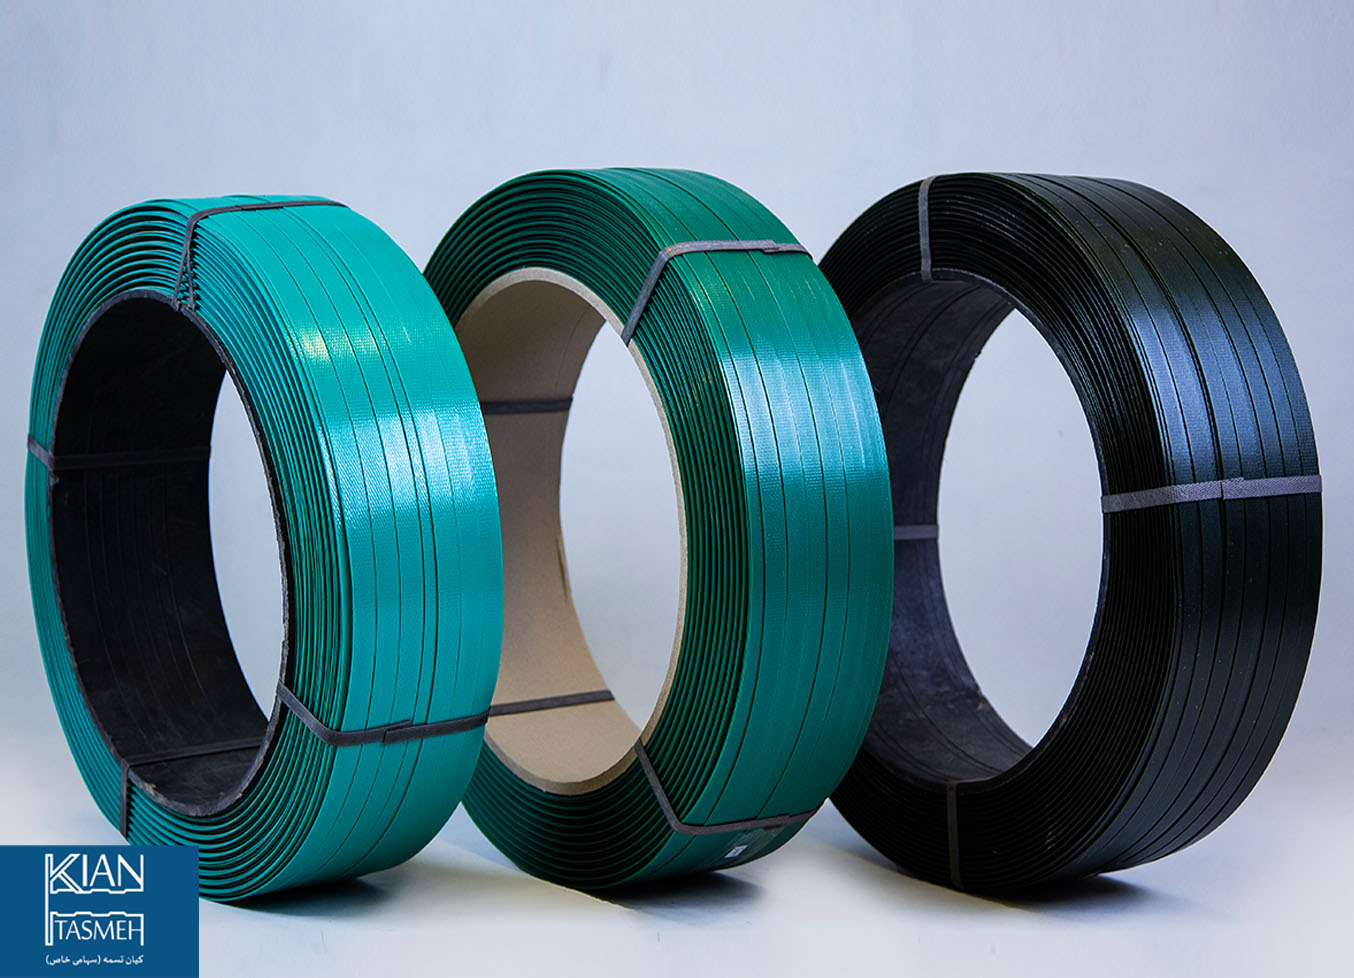 حلقه های تسمه پلاستیکی یا پلی استر PET به رنگ های سبز و سبز تیره و سبز تیره تر